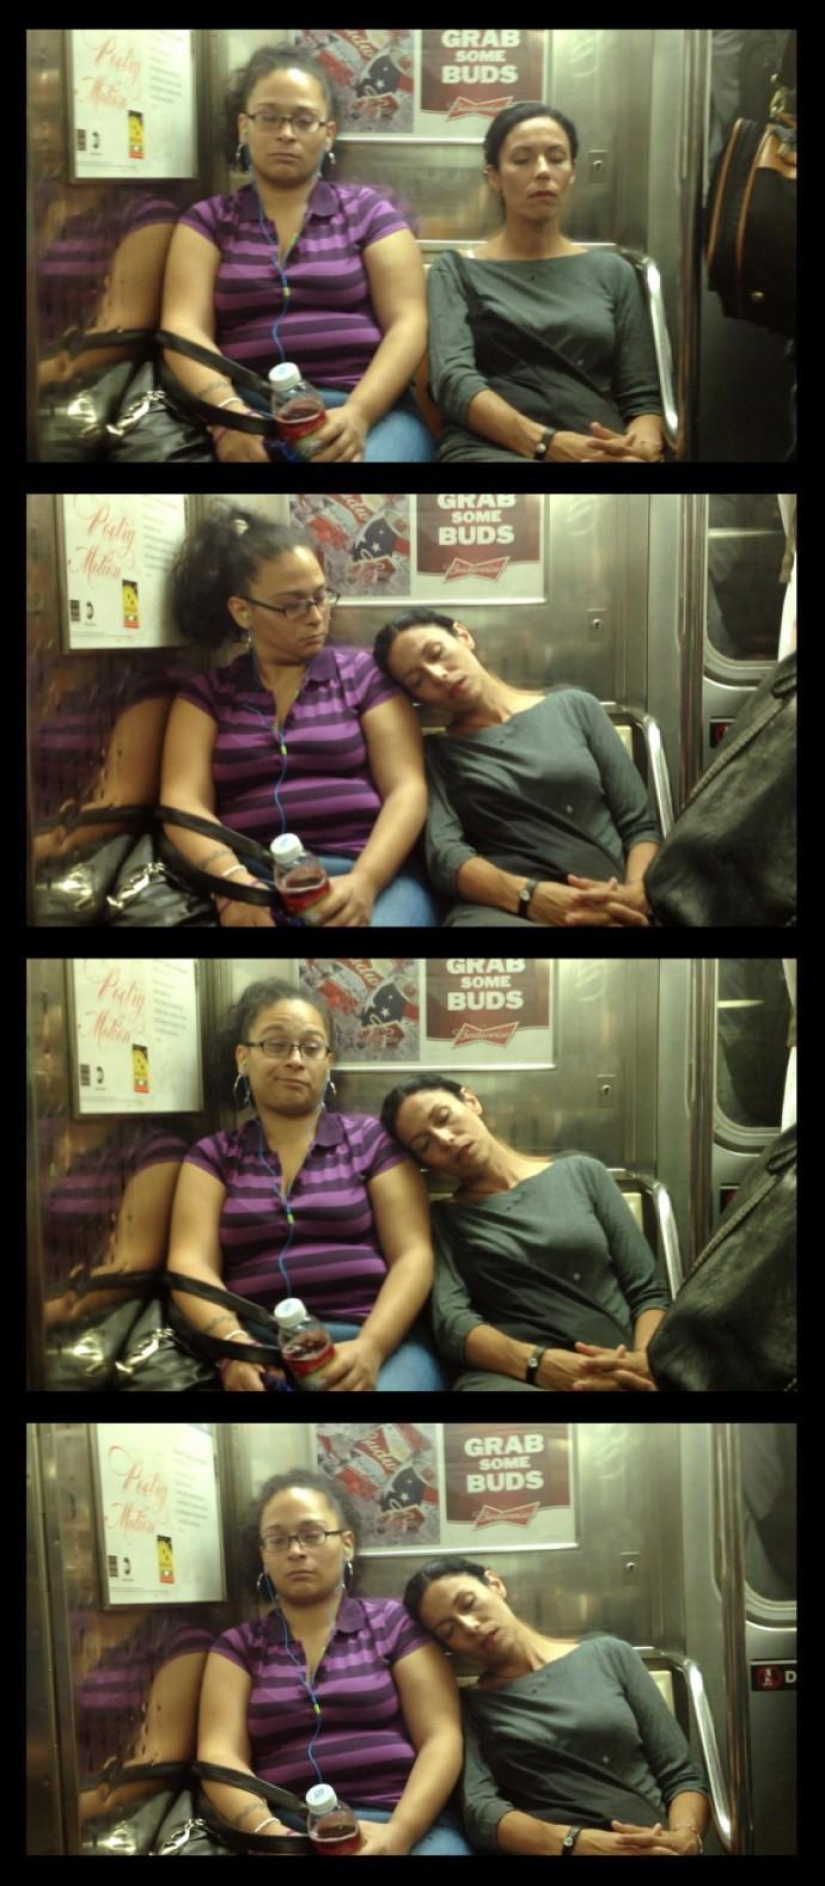 Curiosas fotos de pasajeros "dormidos" en el metro